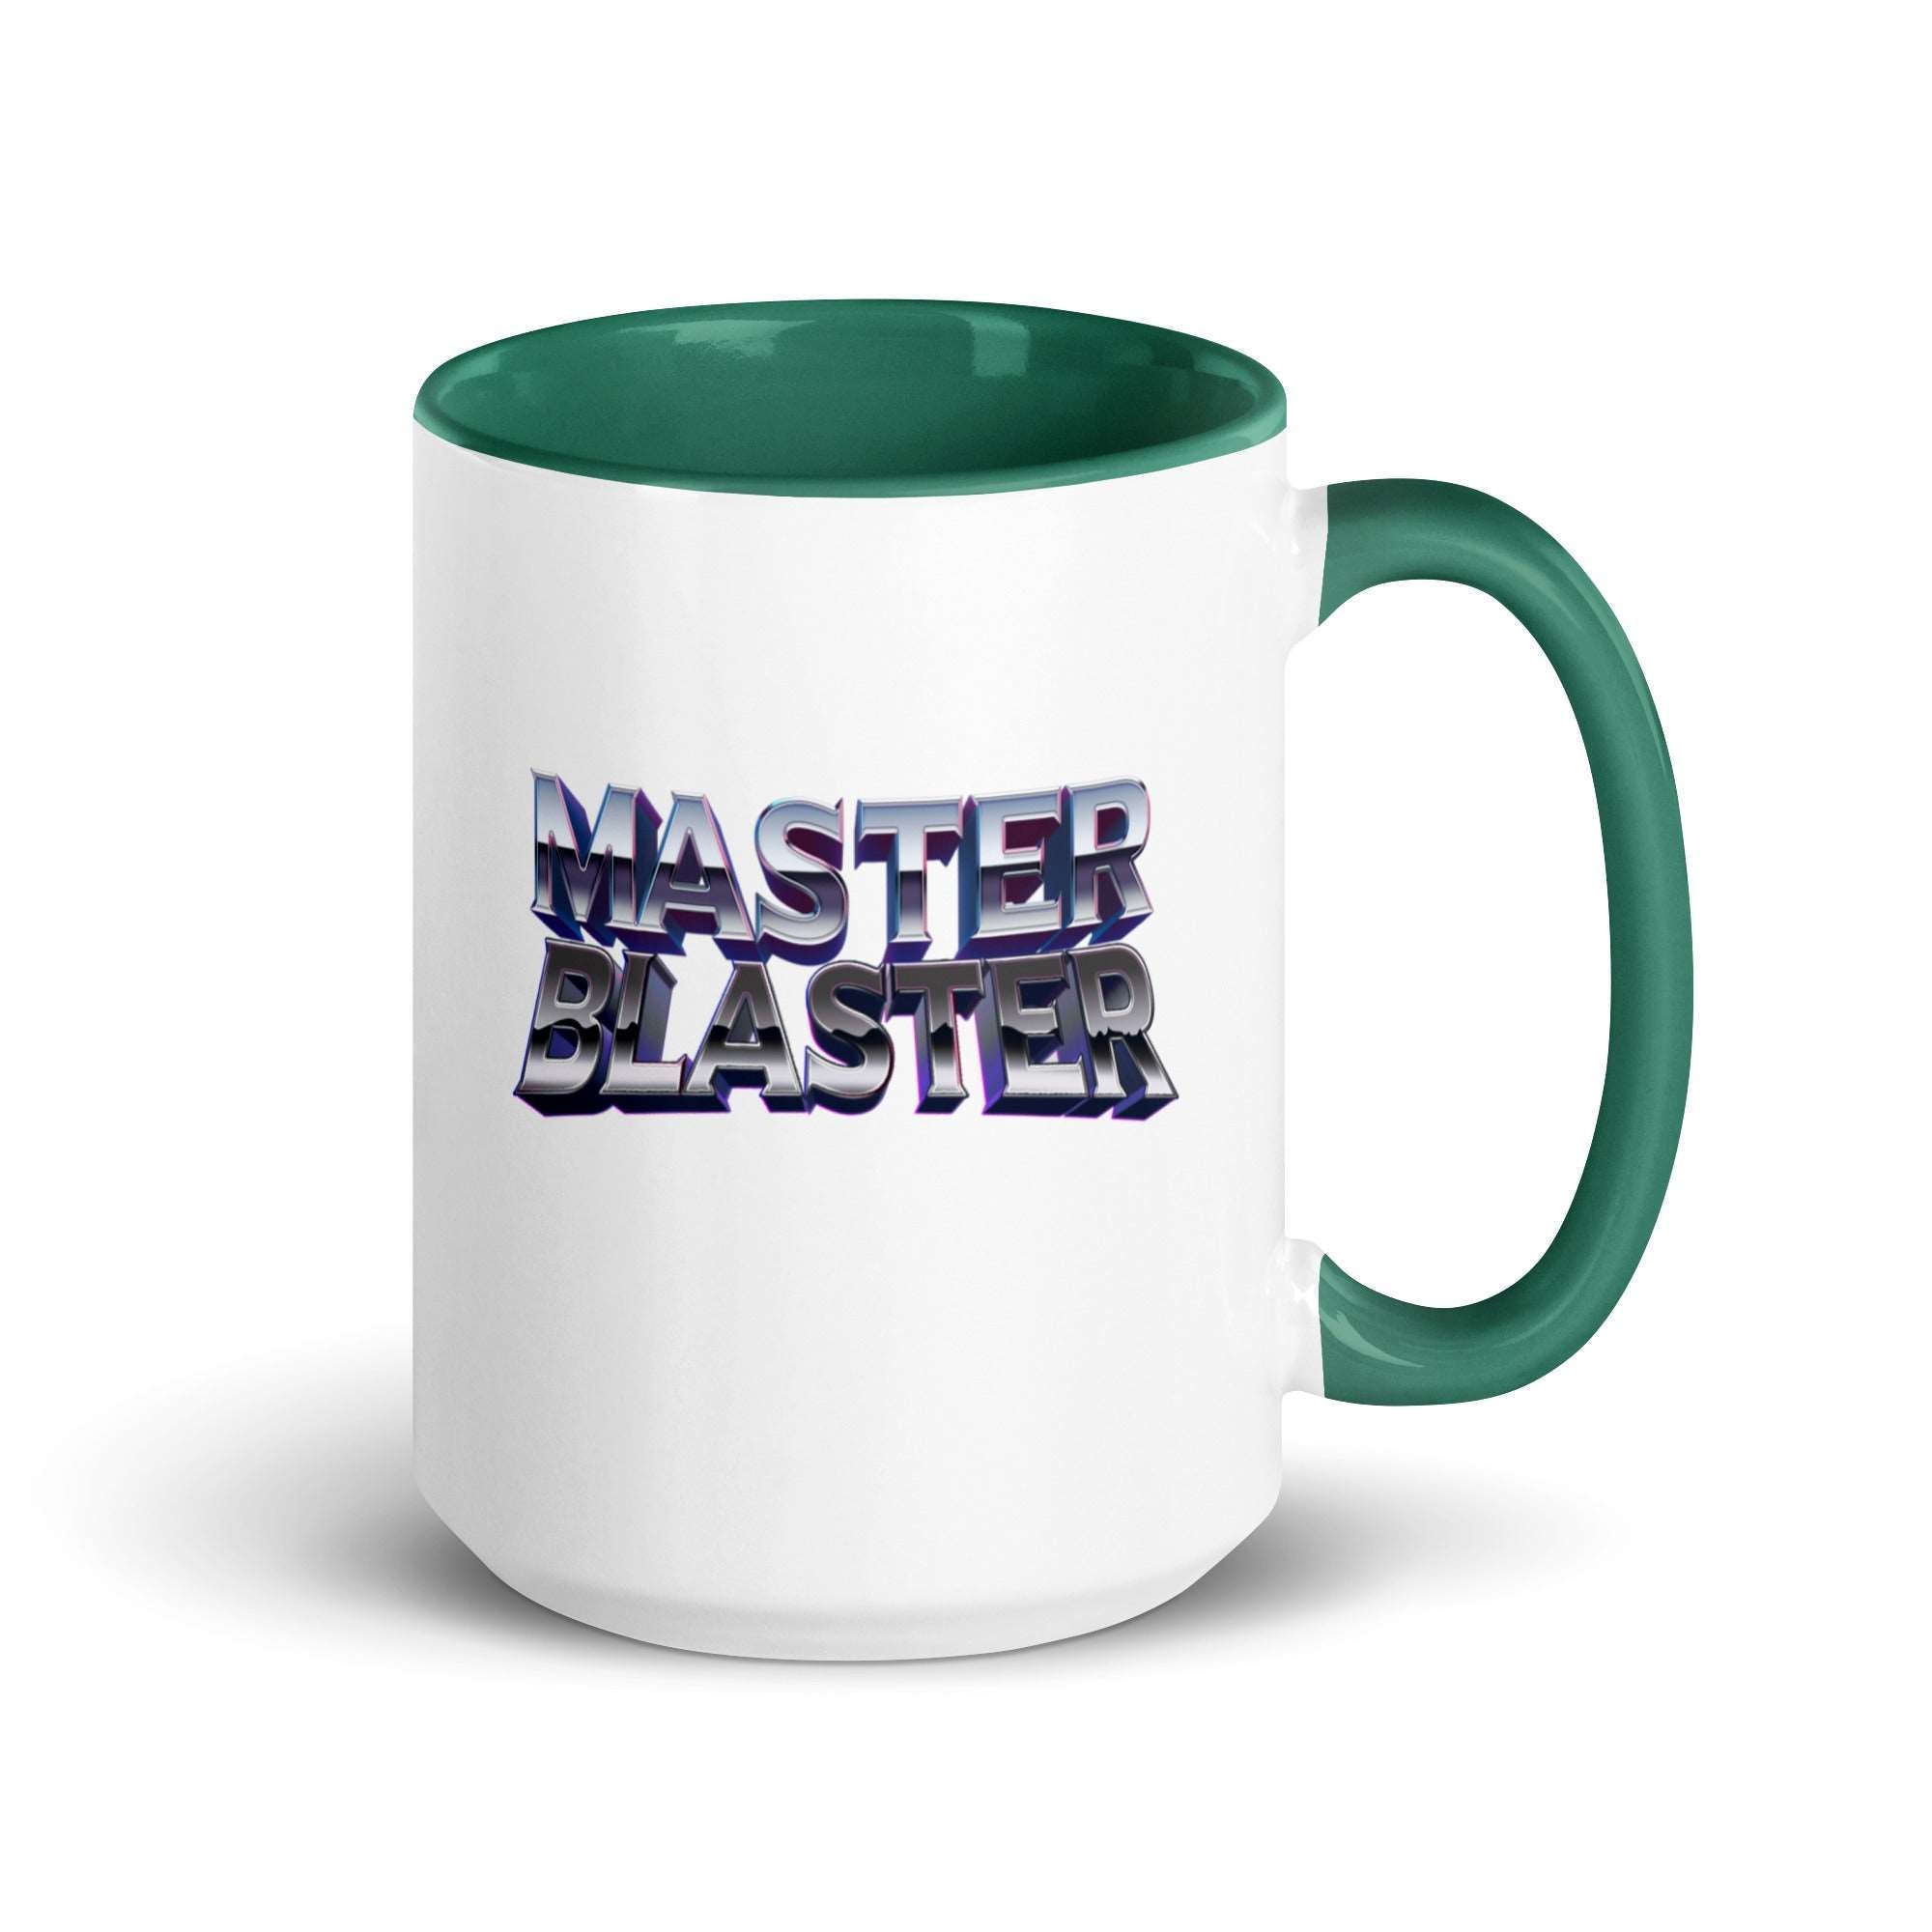 Master Blaster Mug with Color Inside